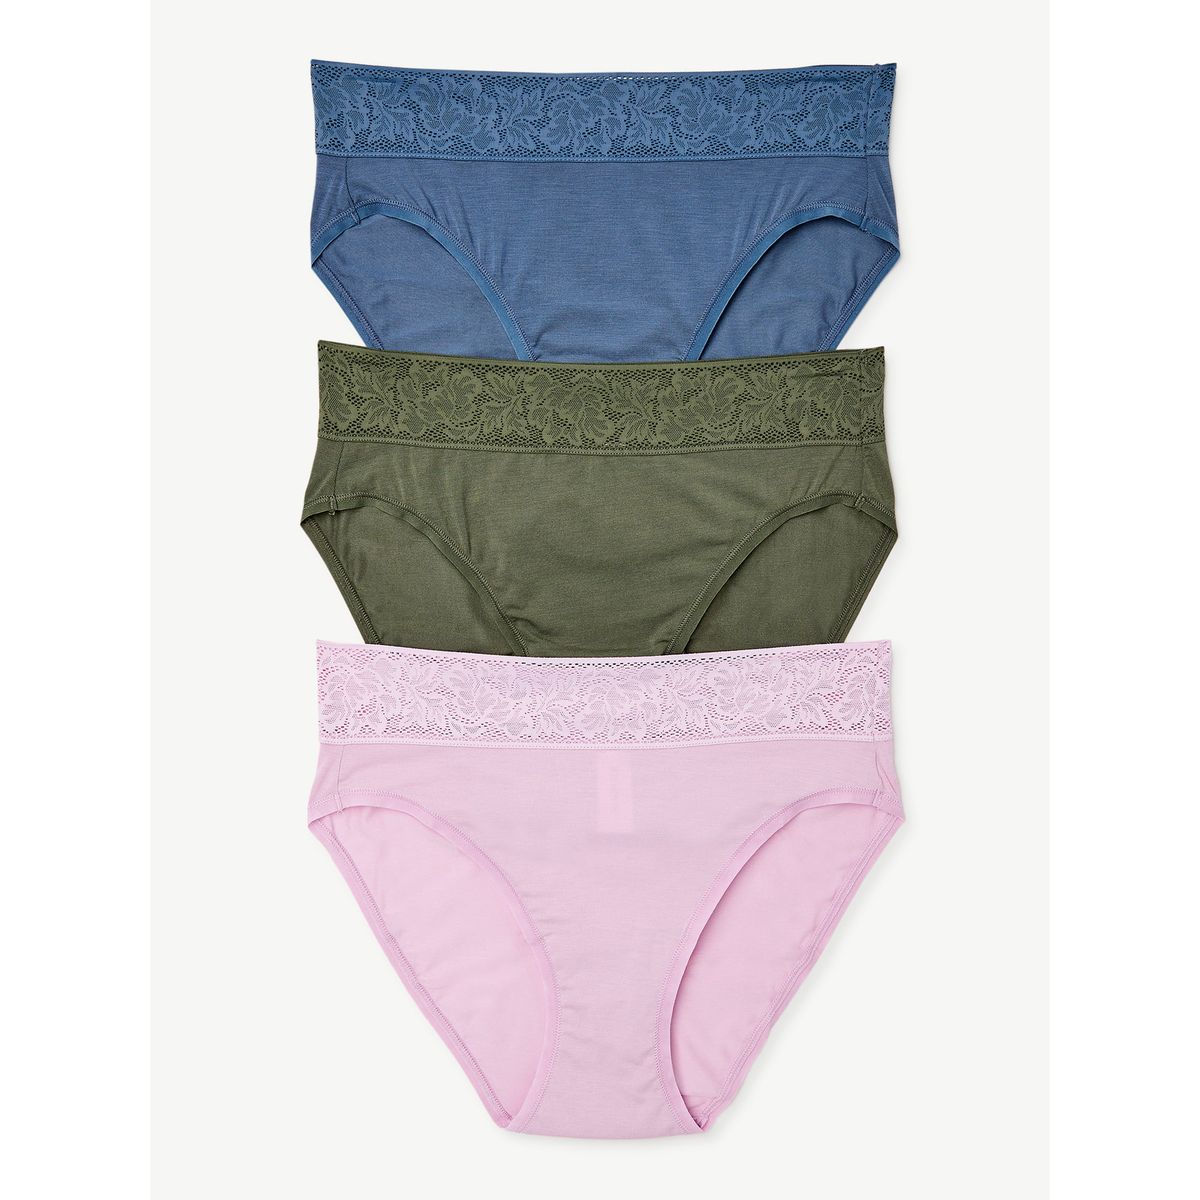 JOYSPUN Women's Panties - 3 Pack